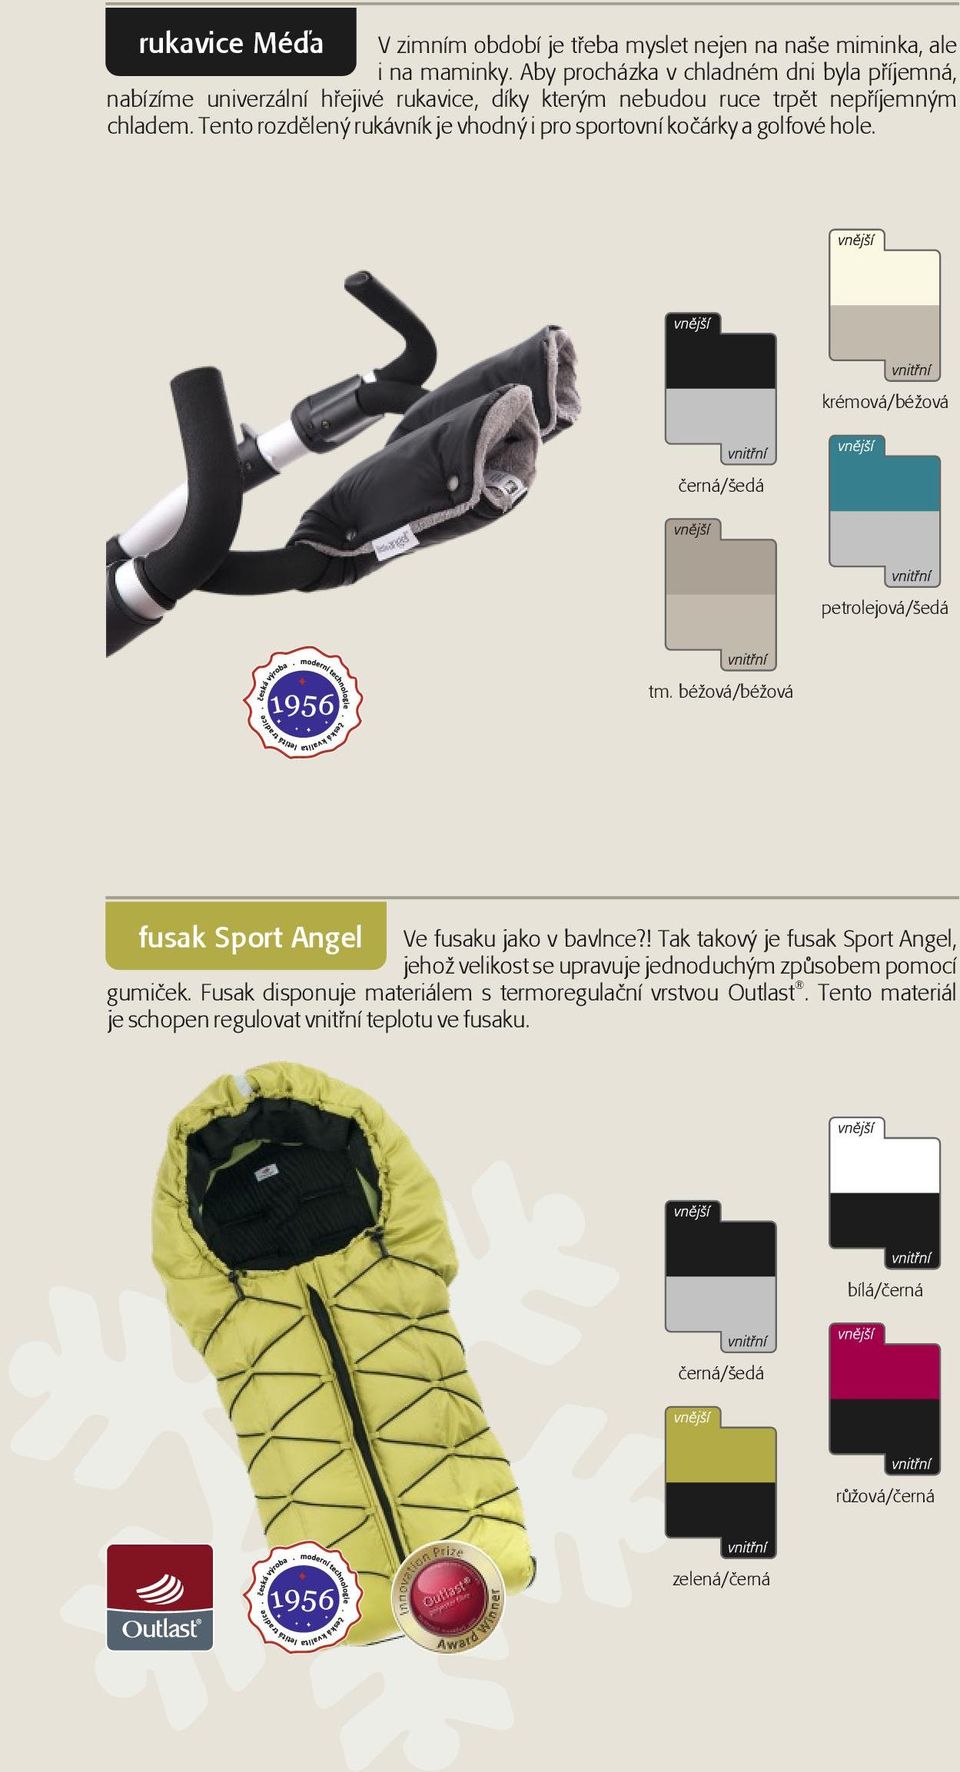 Tento rozdělený rukávník je vhodný i pro sportovní kočárky a golfové hole. fusak Sport Angel Ve fusaku jako v bavlnce?